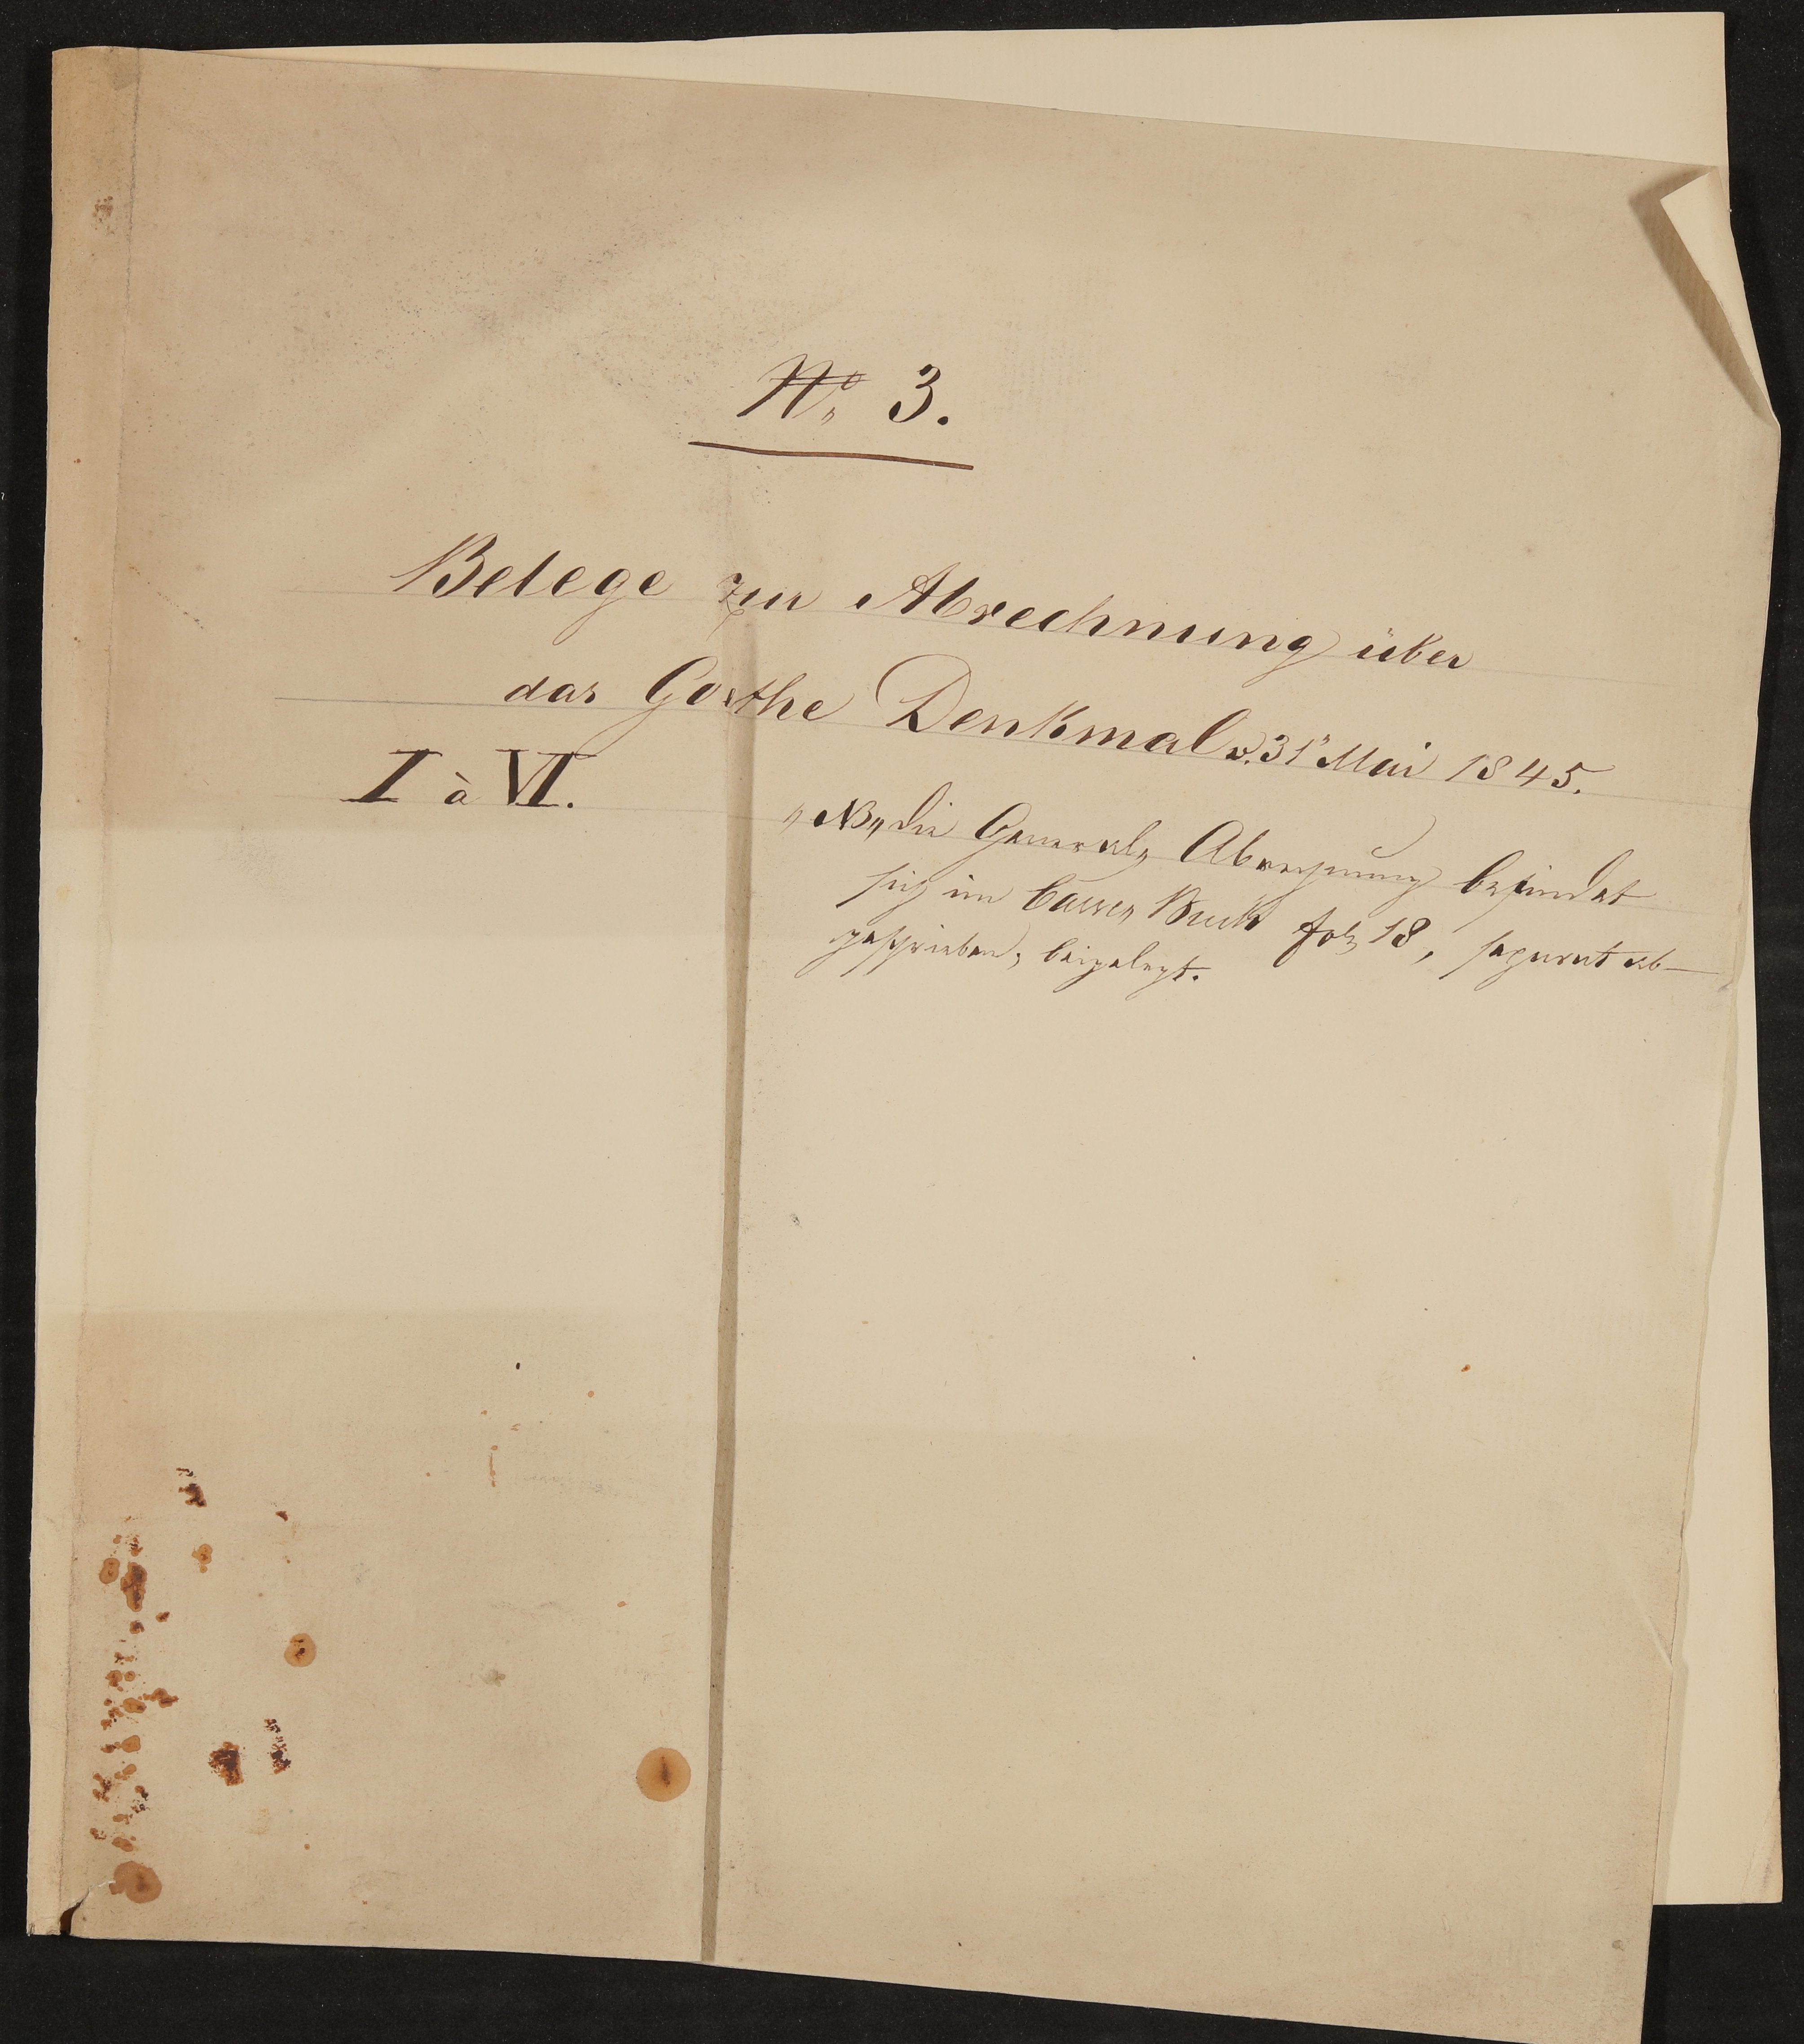 Umschlag des Konvoluts: Belege zur Abrechnung über das Goethe Denkmal vom 31. Mai 1845 - Konvolut I-VI mit weiteren Beilagen (Freies Deutsches Hochstift / Frankfurter Goethe-Museum Public Domain Mark)